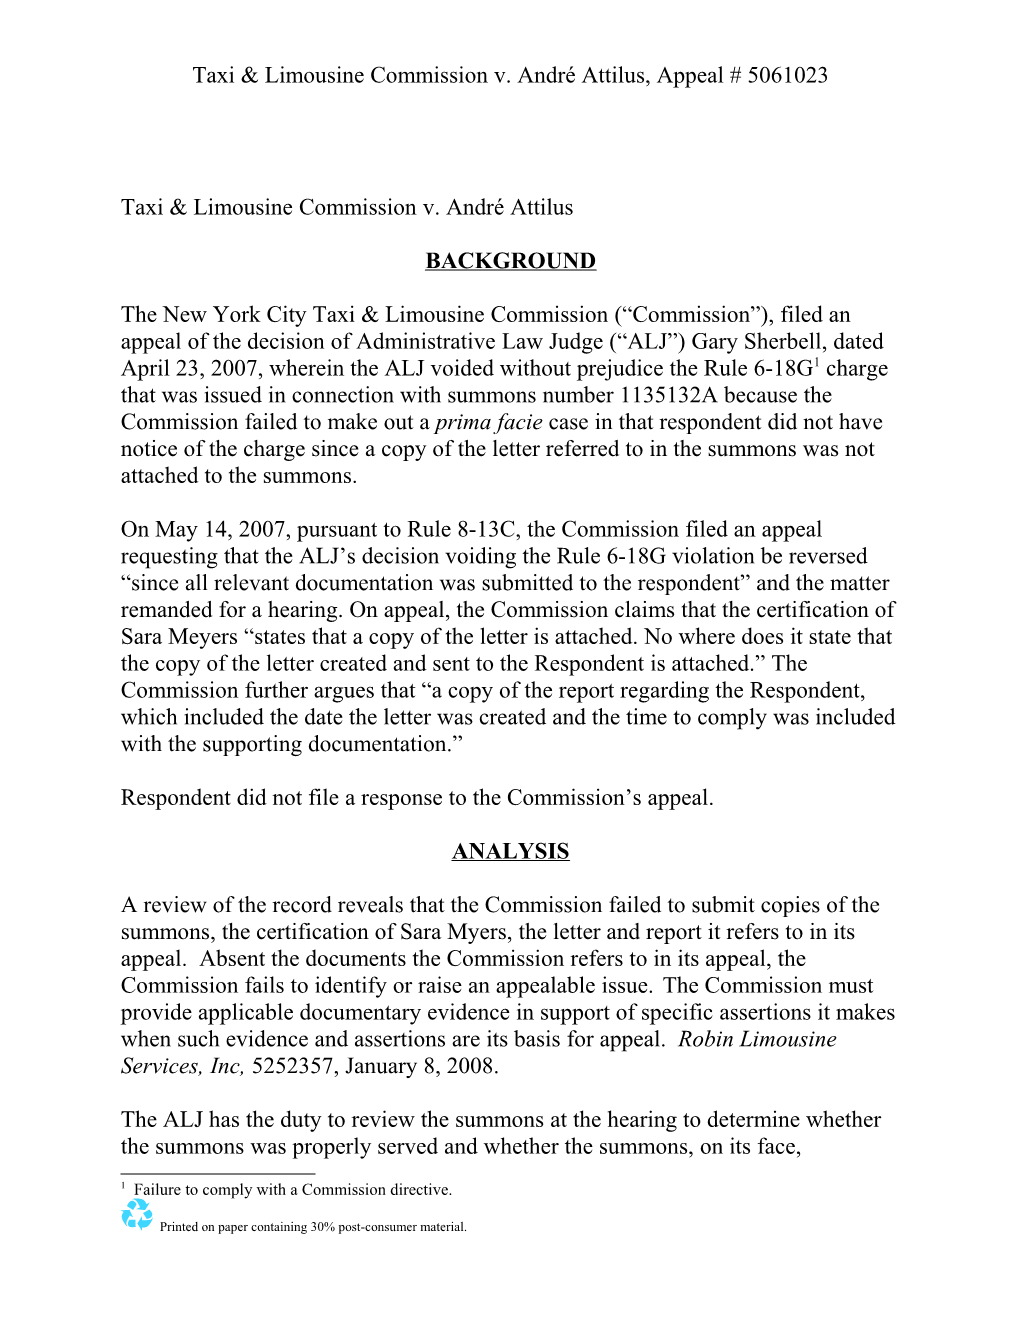 Taxi & Limousine Commission V. André Attilus, Appeal # 5061023